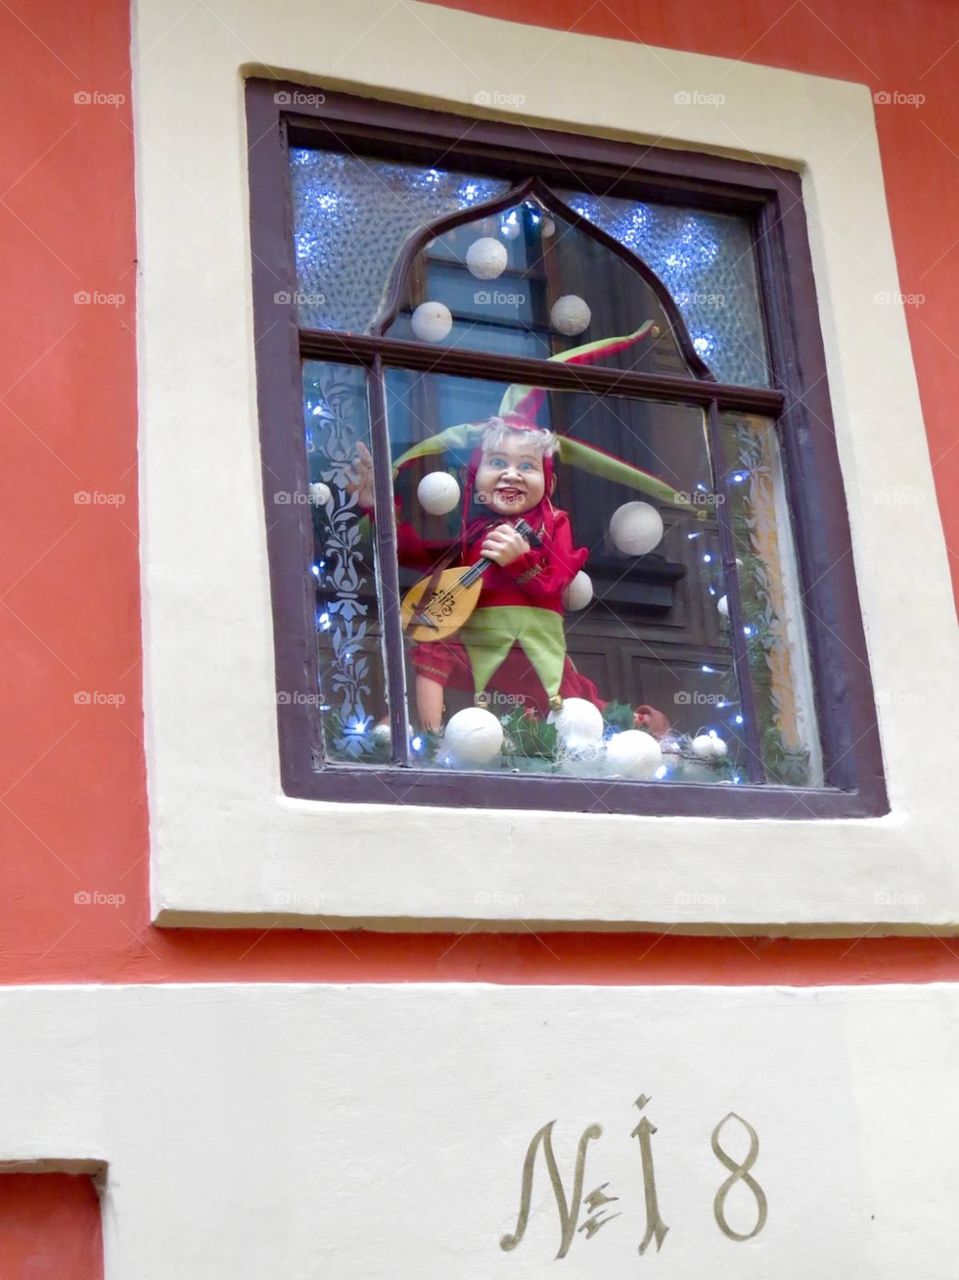 Marionette in window, Prague